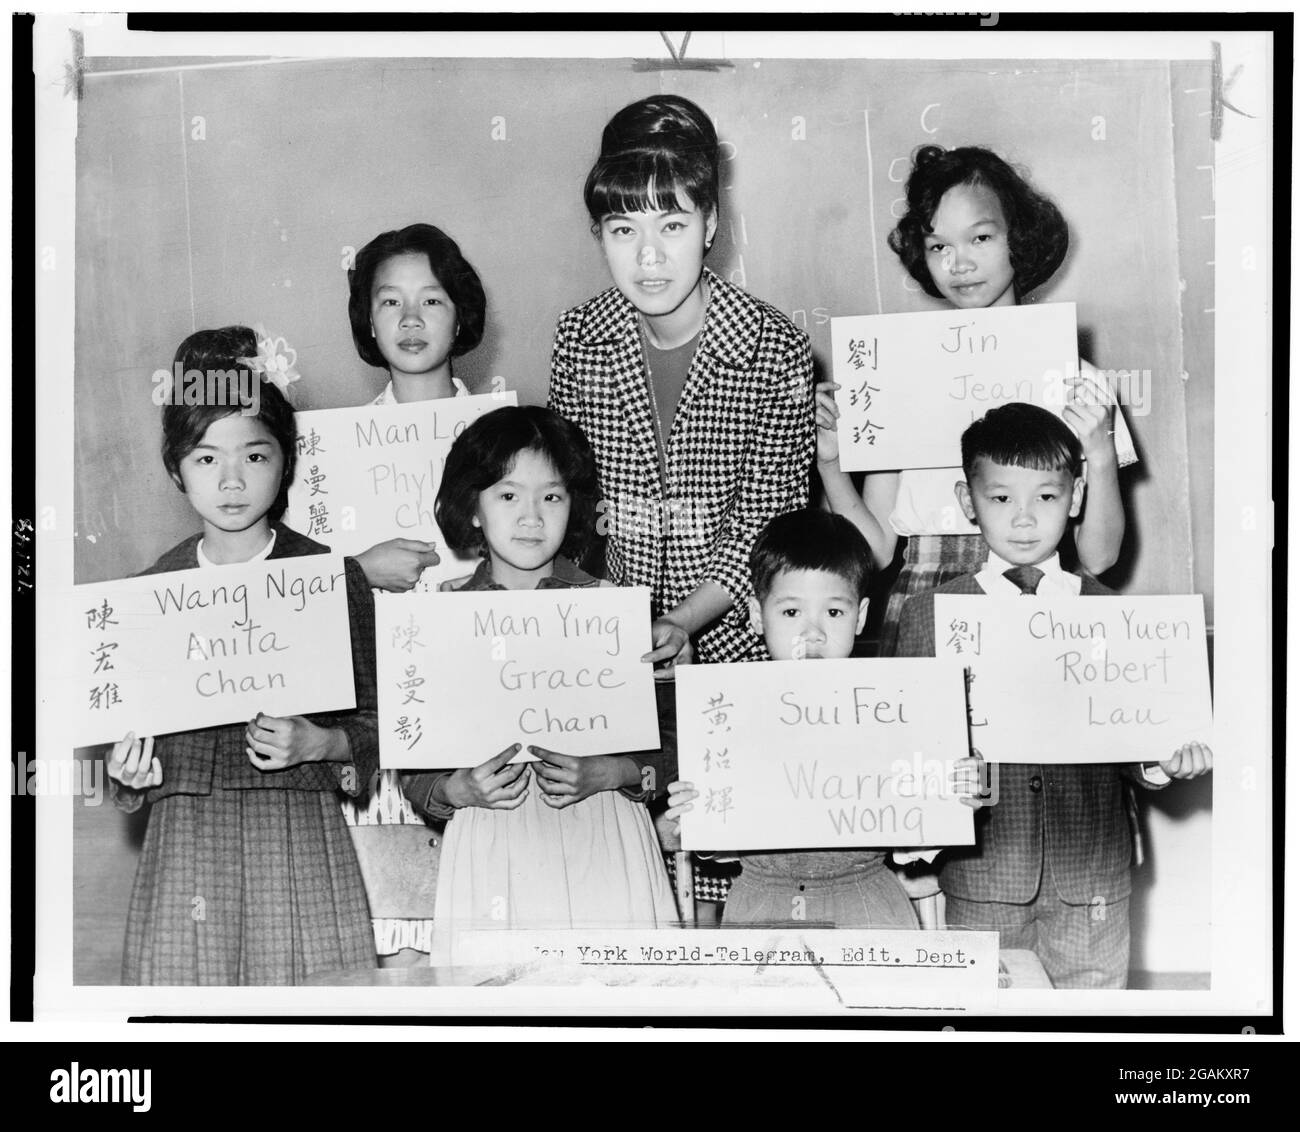 Miss April Lou, insegnante a PS 1, Manhattan, con sei bambini cinesi, i recenti arrivi da Hong Kong e Formosa, che stanno tenendo in mano cartelli che danno il suo nome cinese (sia in ideografie che in traslitterazione) e il nome da inserire nei documenti scolastici ufficiali, New York, NY, 1964. (Foto di Fred Palumbo/New York World-Telegram & Sun Collection/RBM Vintage Images) Foto Stock